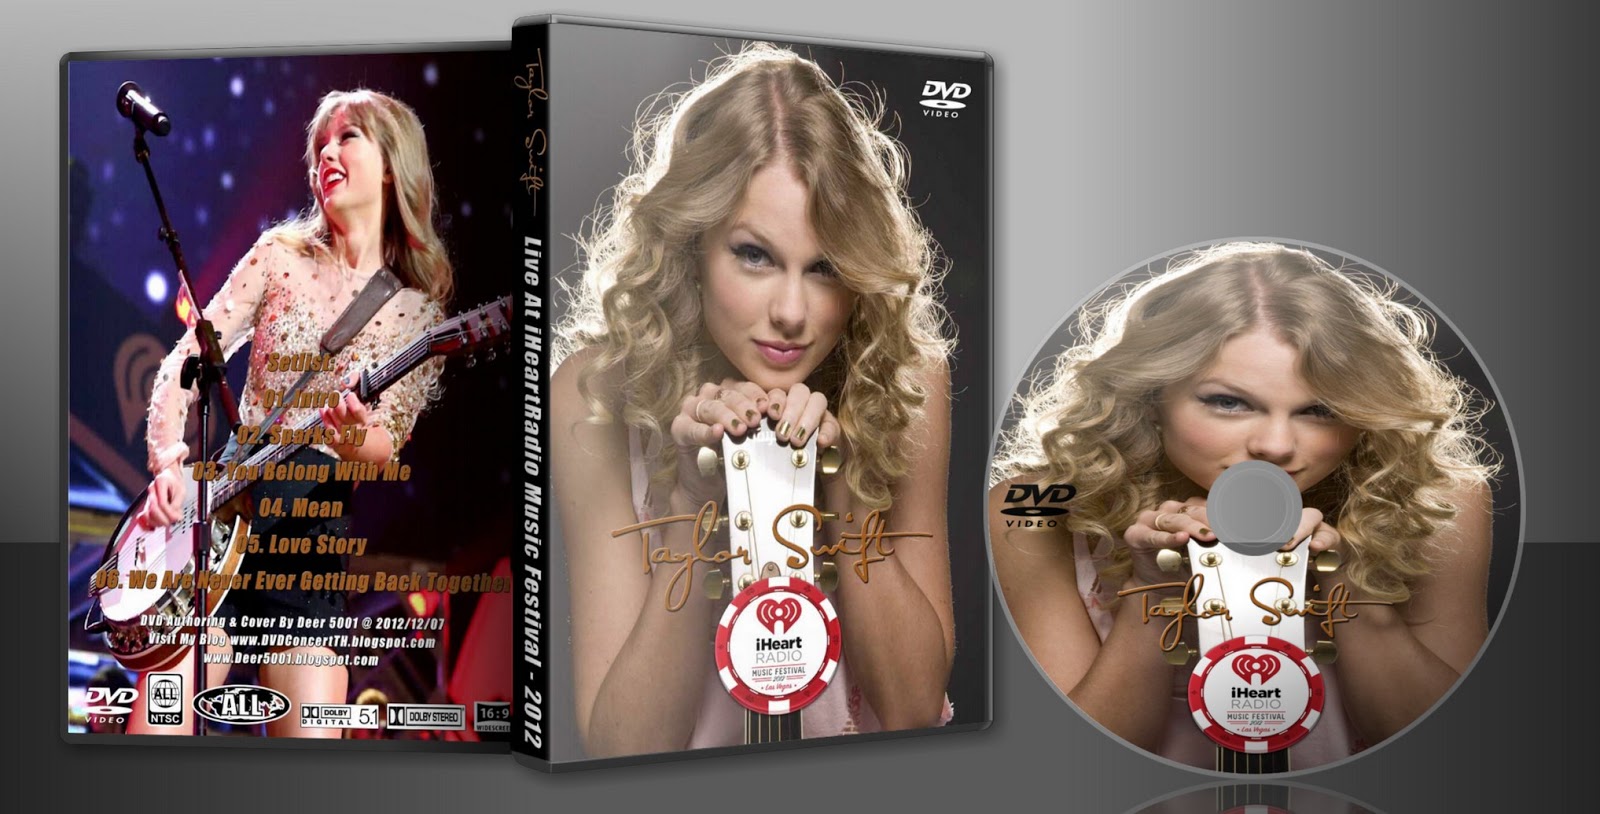 https://blogger.googleusercontent.com/img/b/R29vZ2xl/AVvXsEhy84NgJaCWMhOY9uagJqUp_1r6LU0DDQIpcGv0dYDzTT0CpRr3QRwqhp1zD6q1zuQpHDZRTN1MmG9q9EWty9W5cvOFjHzy5P8Vd9JDMwKRNM2qyXIpXNwVwt8Iir7mYo6lefaRCqTfiViX/s1600/DVD+Cover+For+Show+-+Taylor+Swift+-+iHeartRadio+Music+Festival+-+2012.jpg